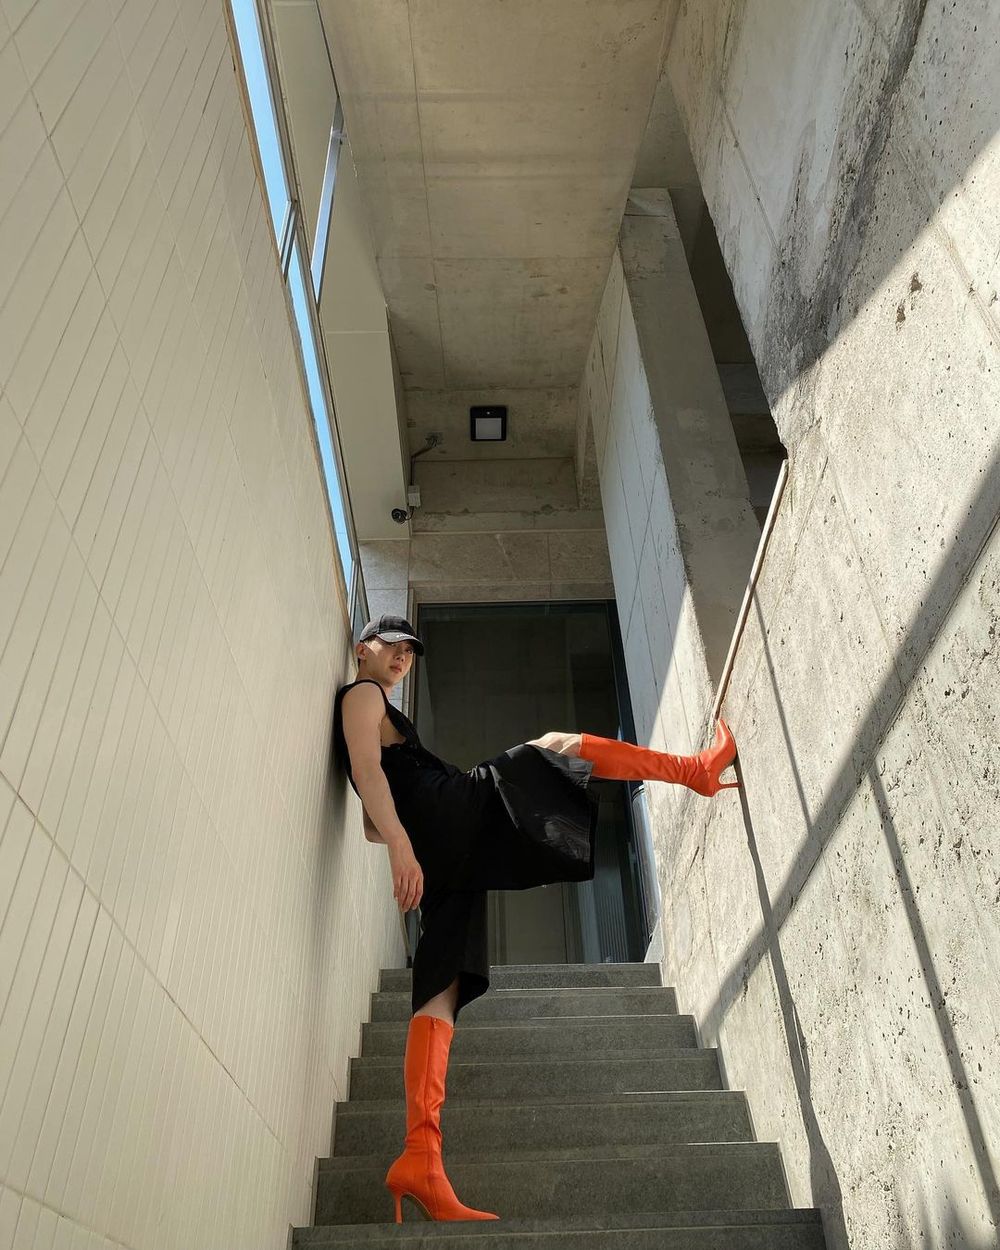  
Jo Kwon đầy cá tính khi dám diện cho mình đôi boot nữ với màu sắc nổi bật. (Ảnh: Instagram)